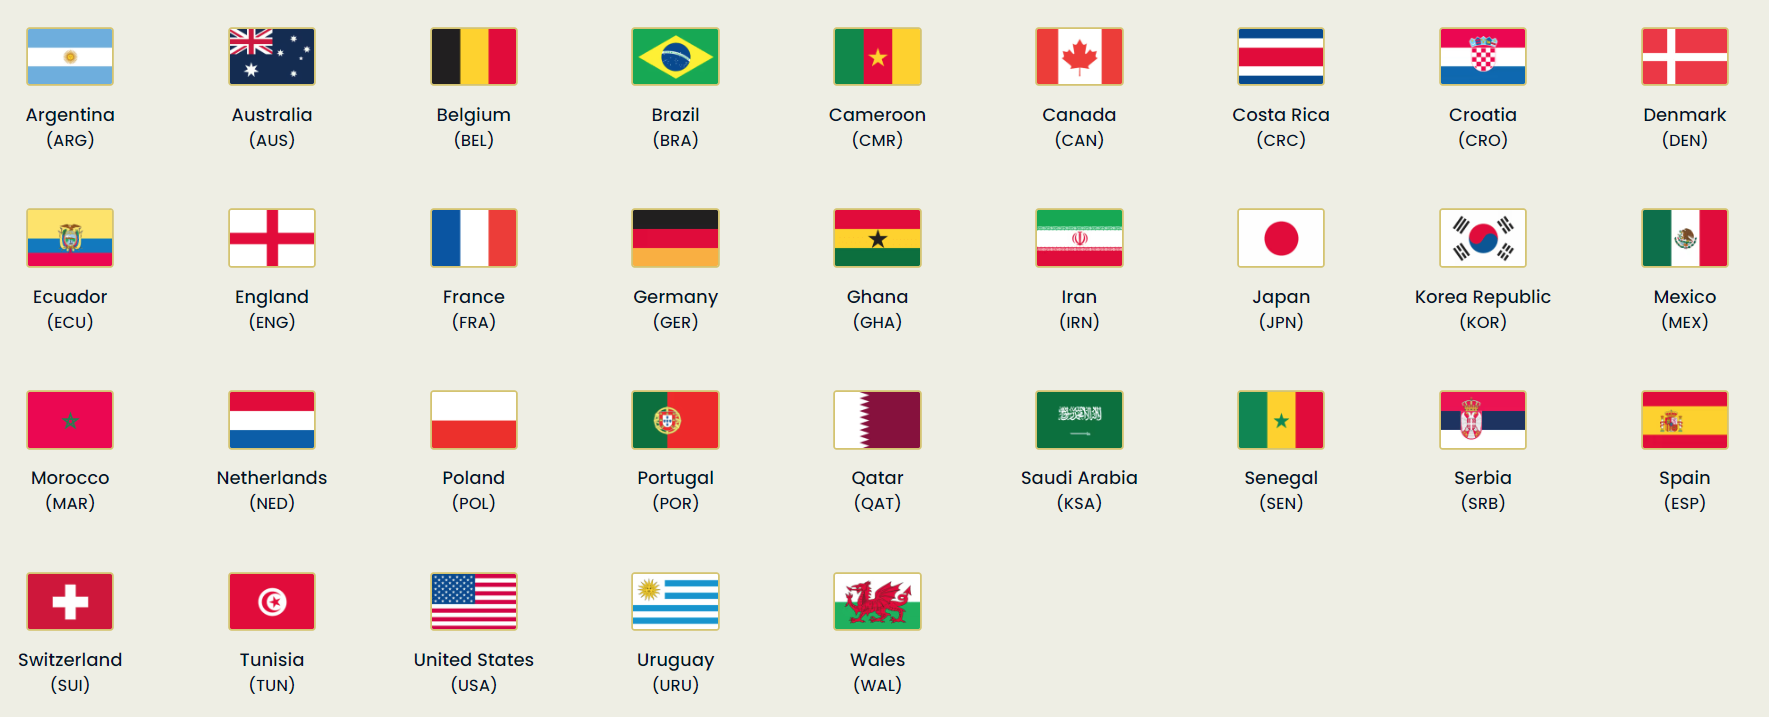 Tabelle der Qualifikanten für die Weltmeisterschaft 2022